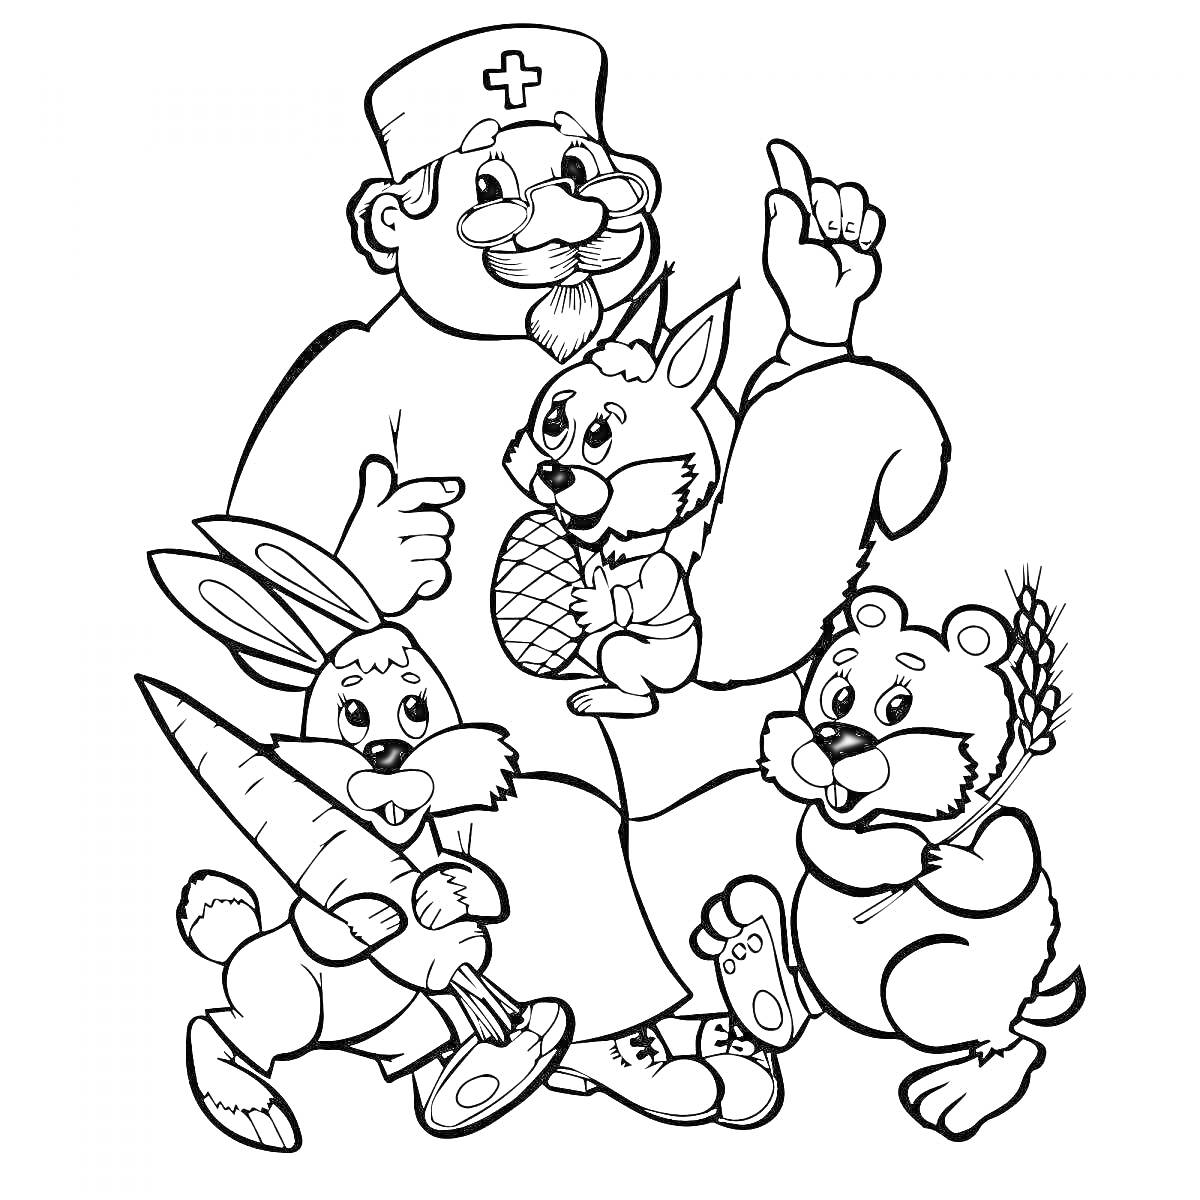 Раскраска Доктор Айболит с больными животными: белка с орехом, заяц с морковкой, медвежонок с забинтованной лапой